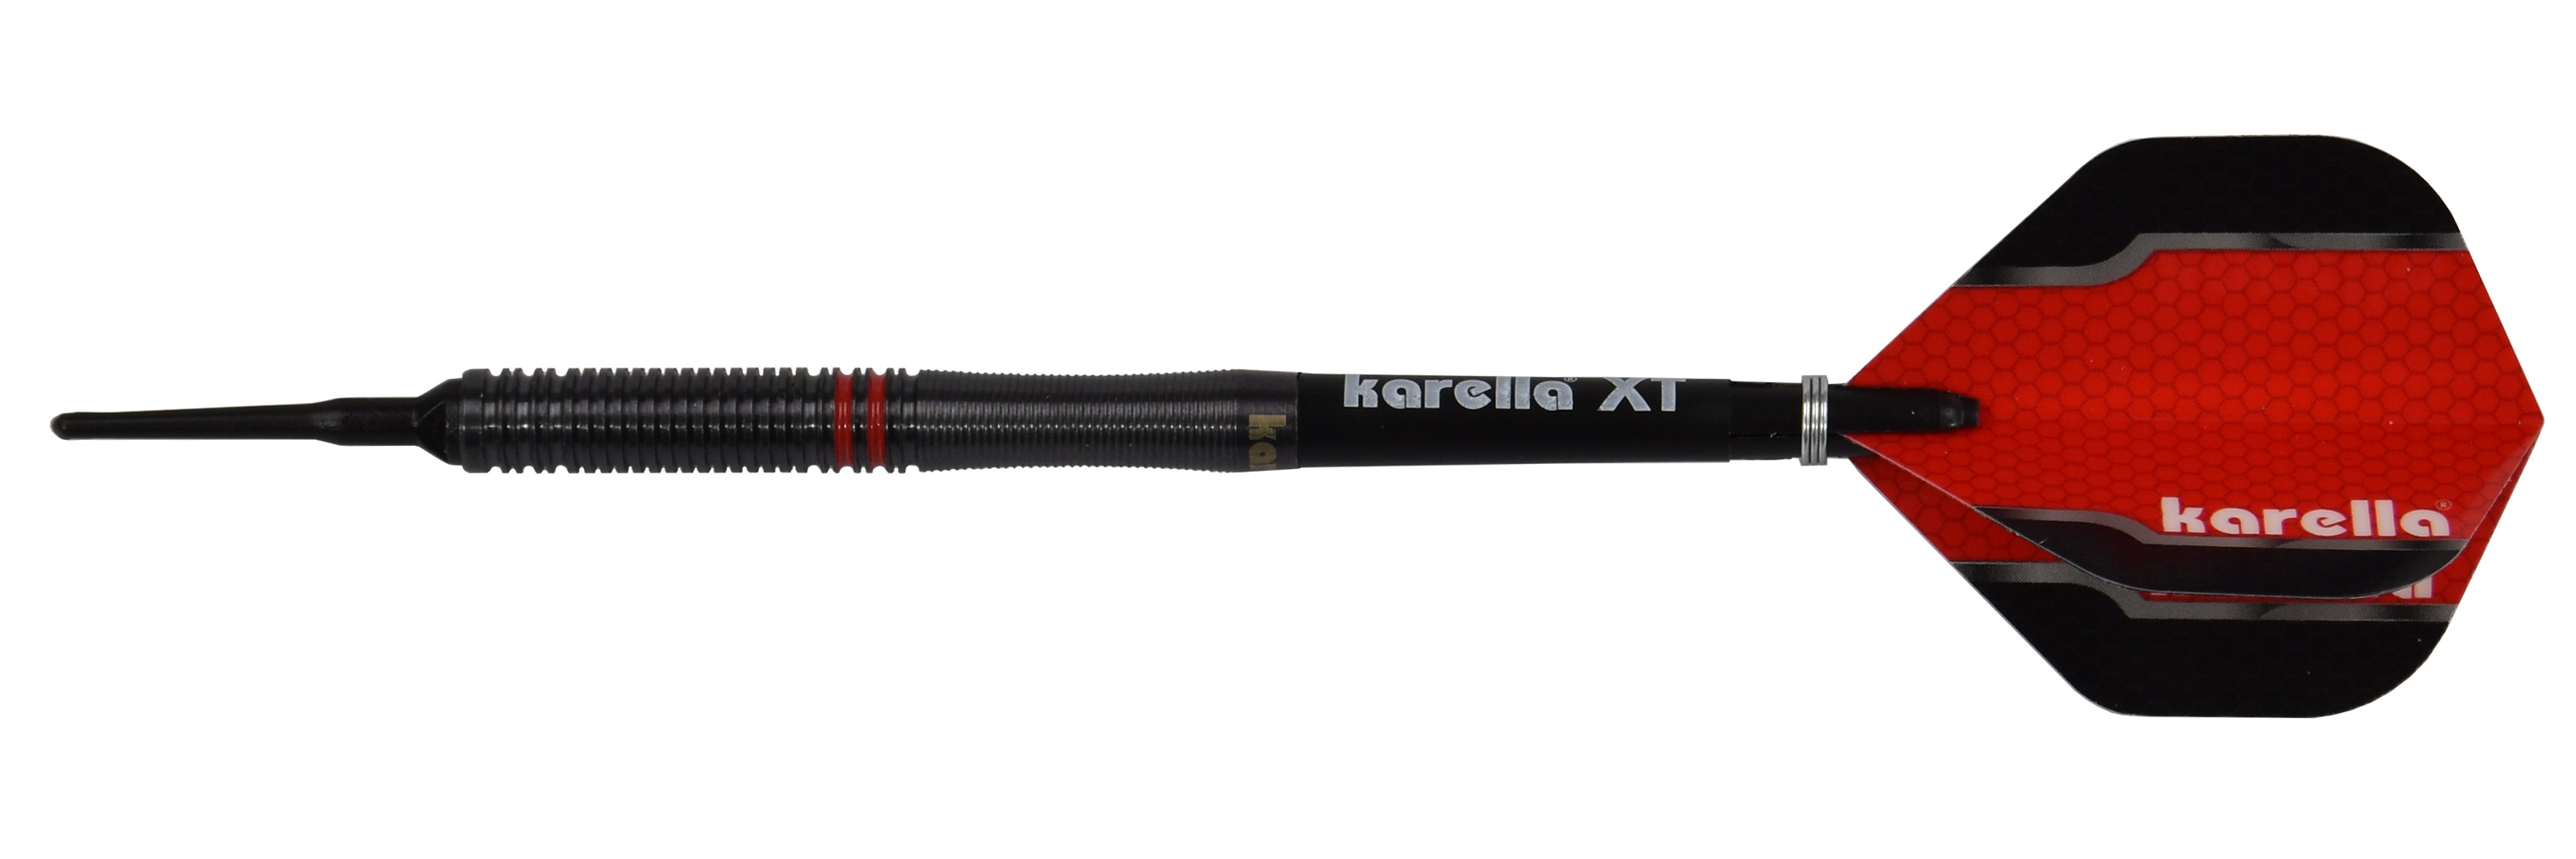 Softdart Karella Fighter, black, 90% Tungsten, 20 g or 18 g